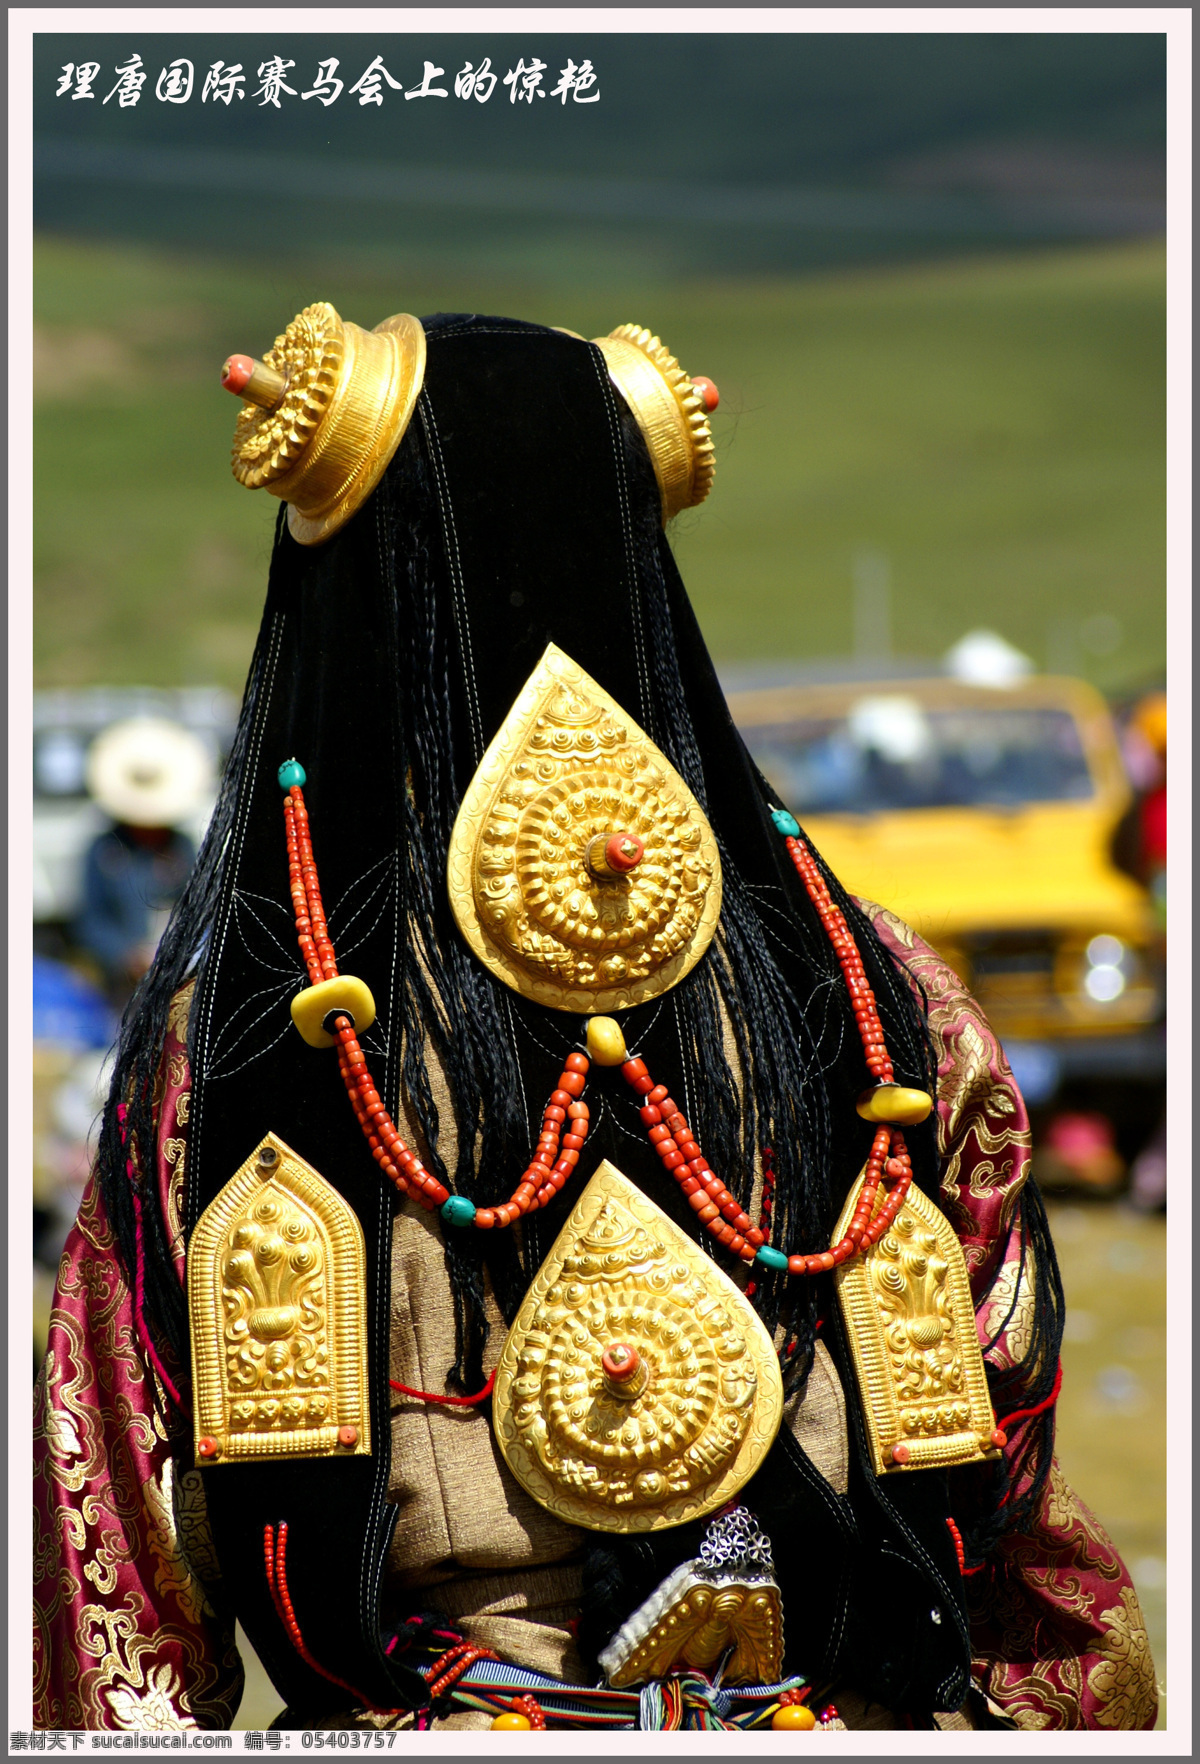 藏区 姑娘 漂亮 头饰 藏族 理塘 赛马会 旅游摄影 国内旅游 摄影图库